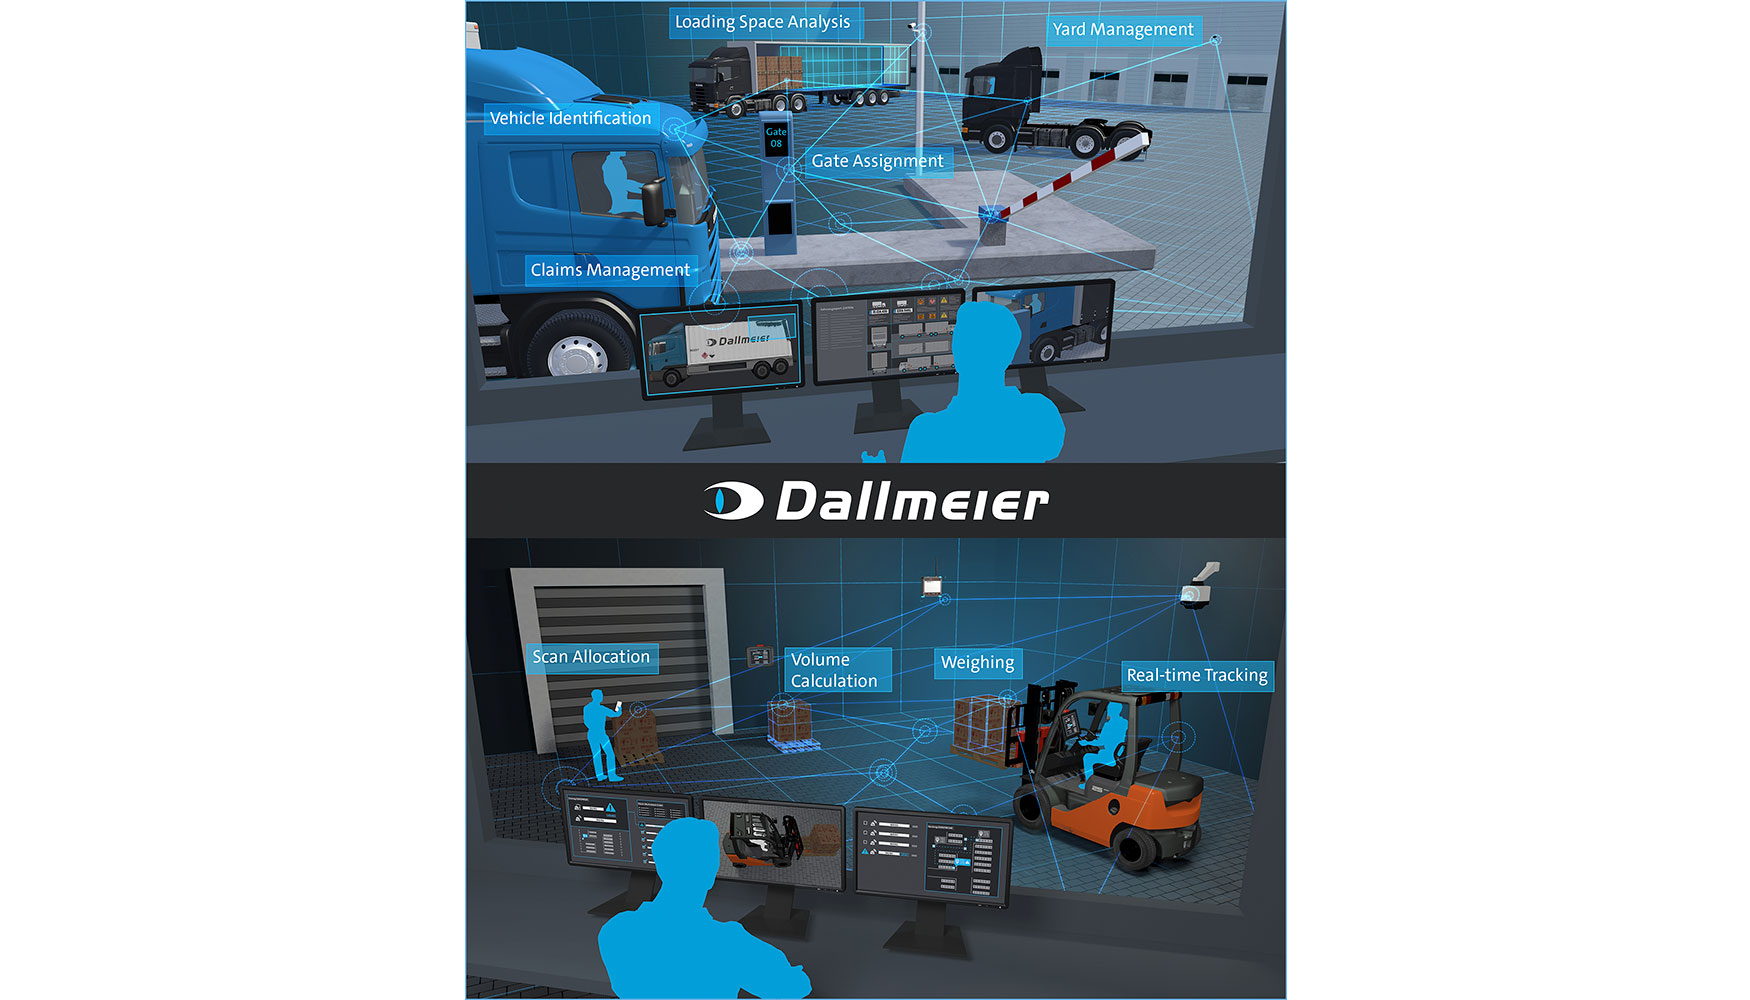 Dallmeier ofrece soluciones de vdeo y software integradas para reas esenciales en empresas de logstica